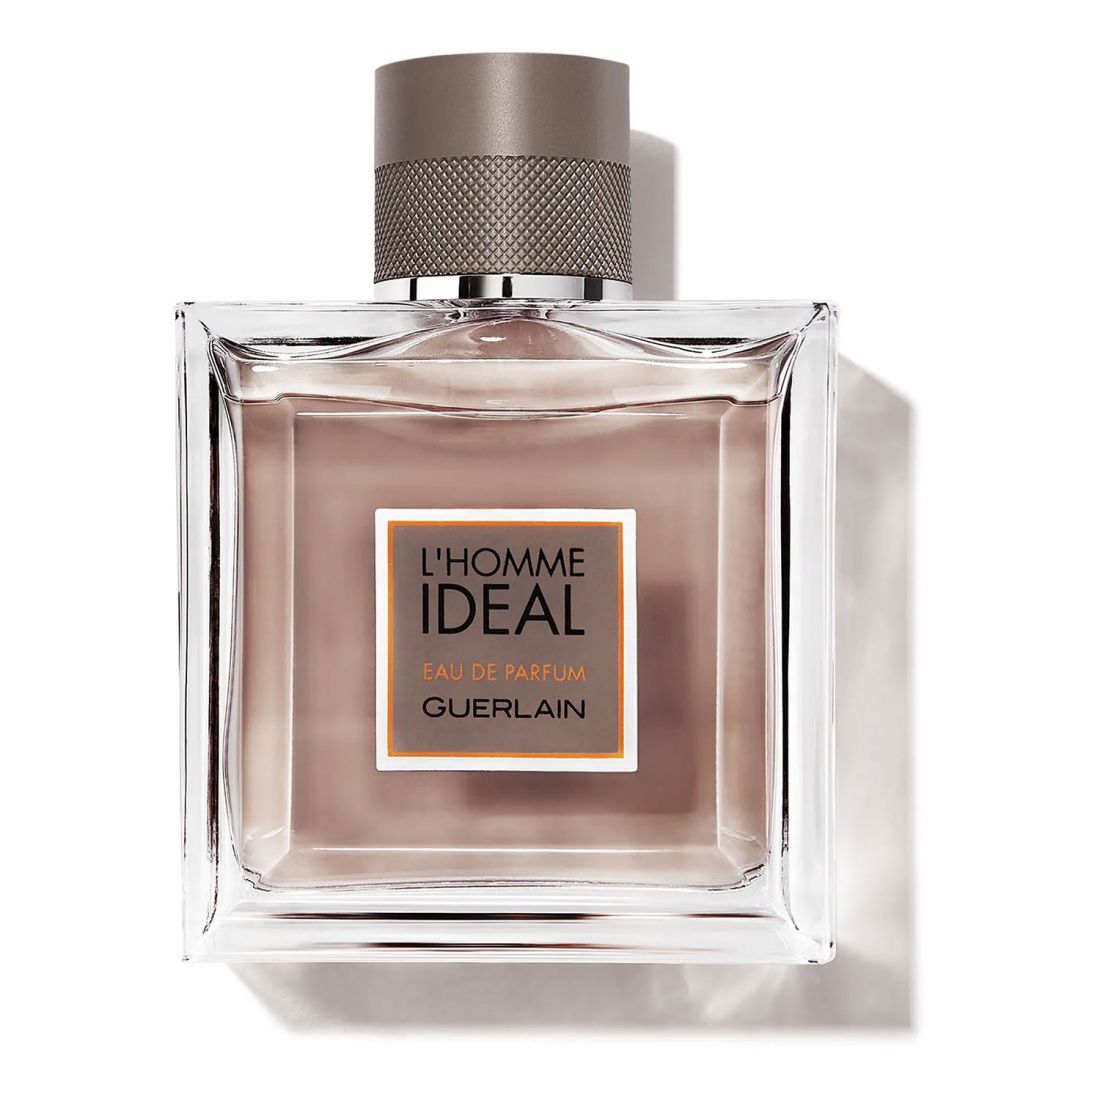 Guerlain - Eau de parfum 'L'Homme Idéal' - 100 ml